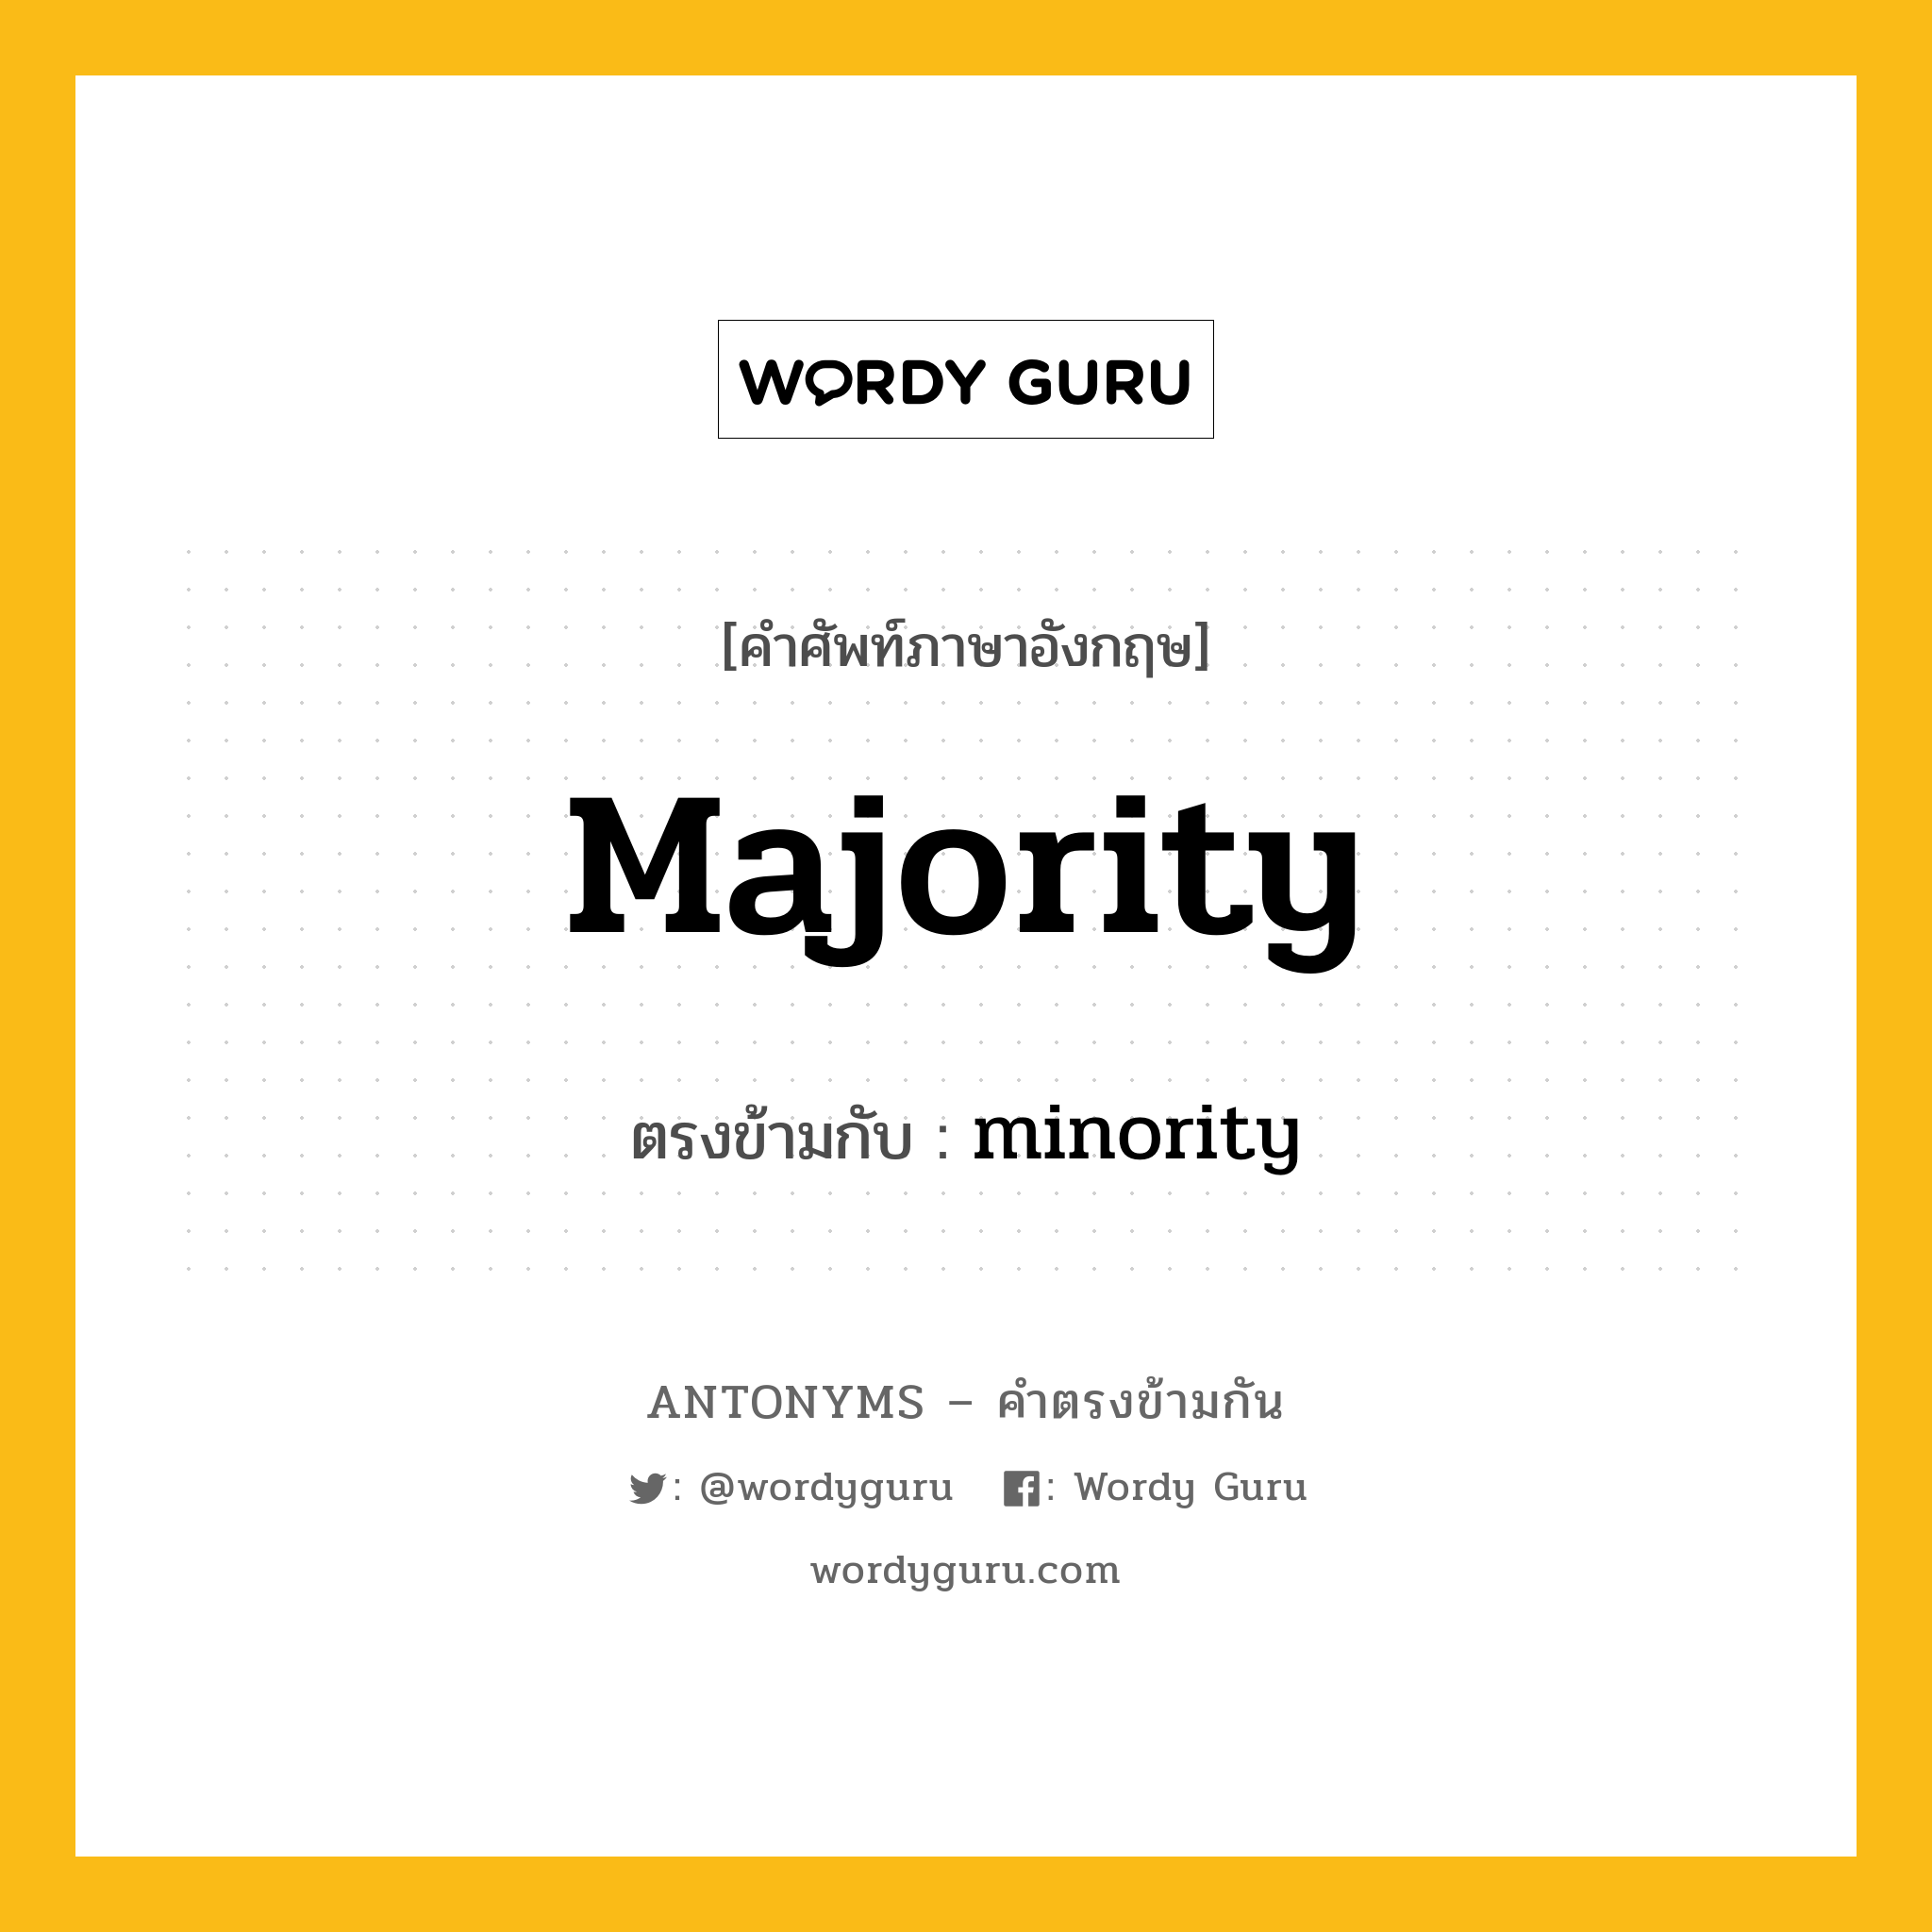 majority เป็นคำตรงข้ามกับคำไหนบ้าง?, คำศัพท์ภาษาอังกฤษ majority ตรงข้ามกับ minority หมวด minority